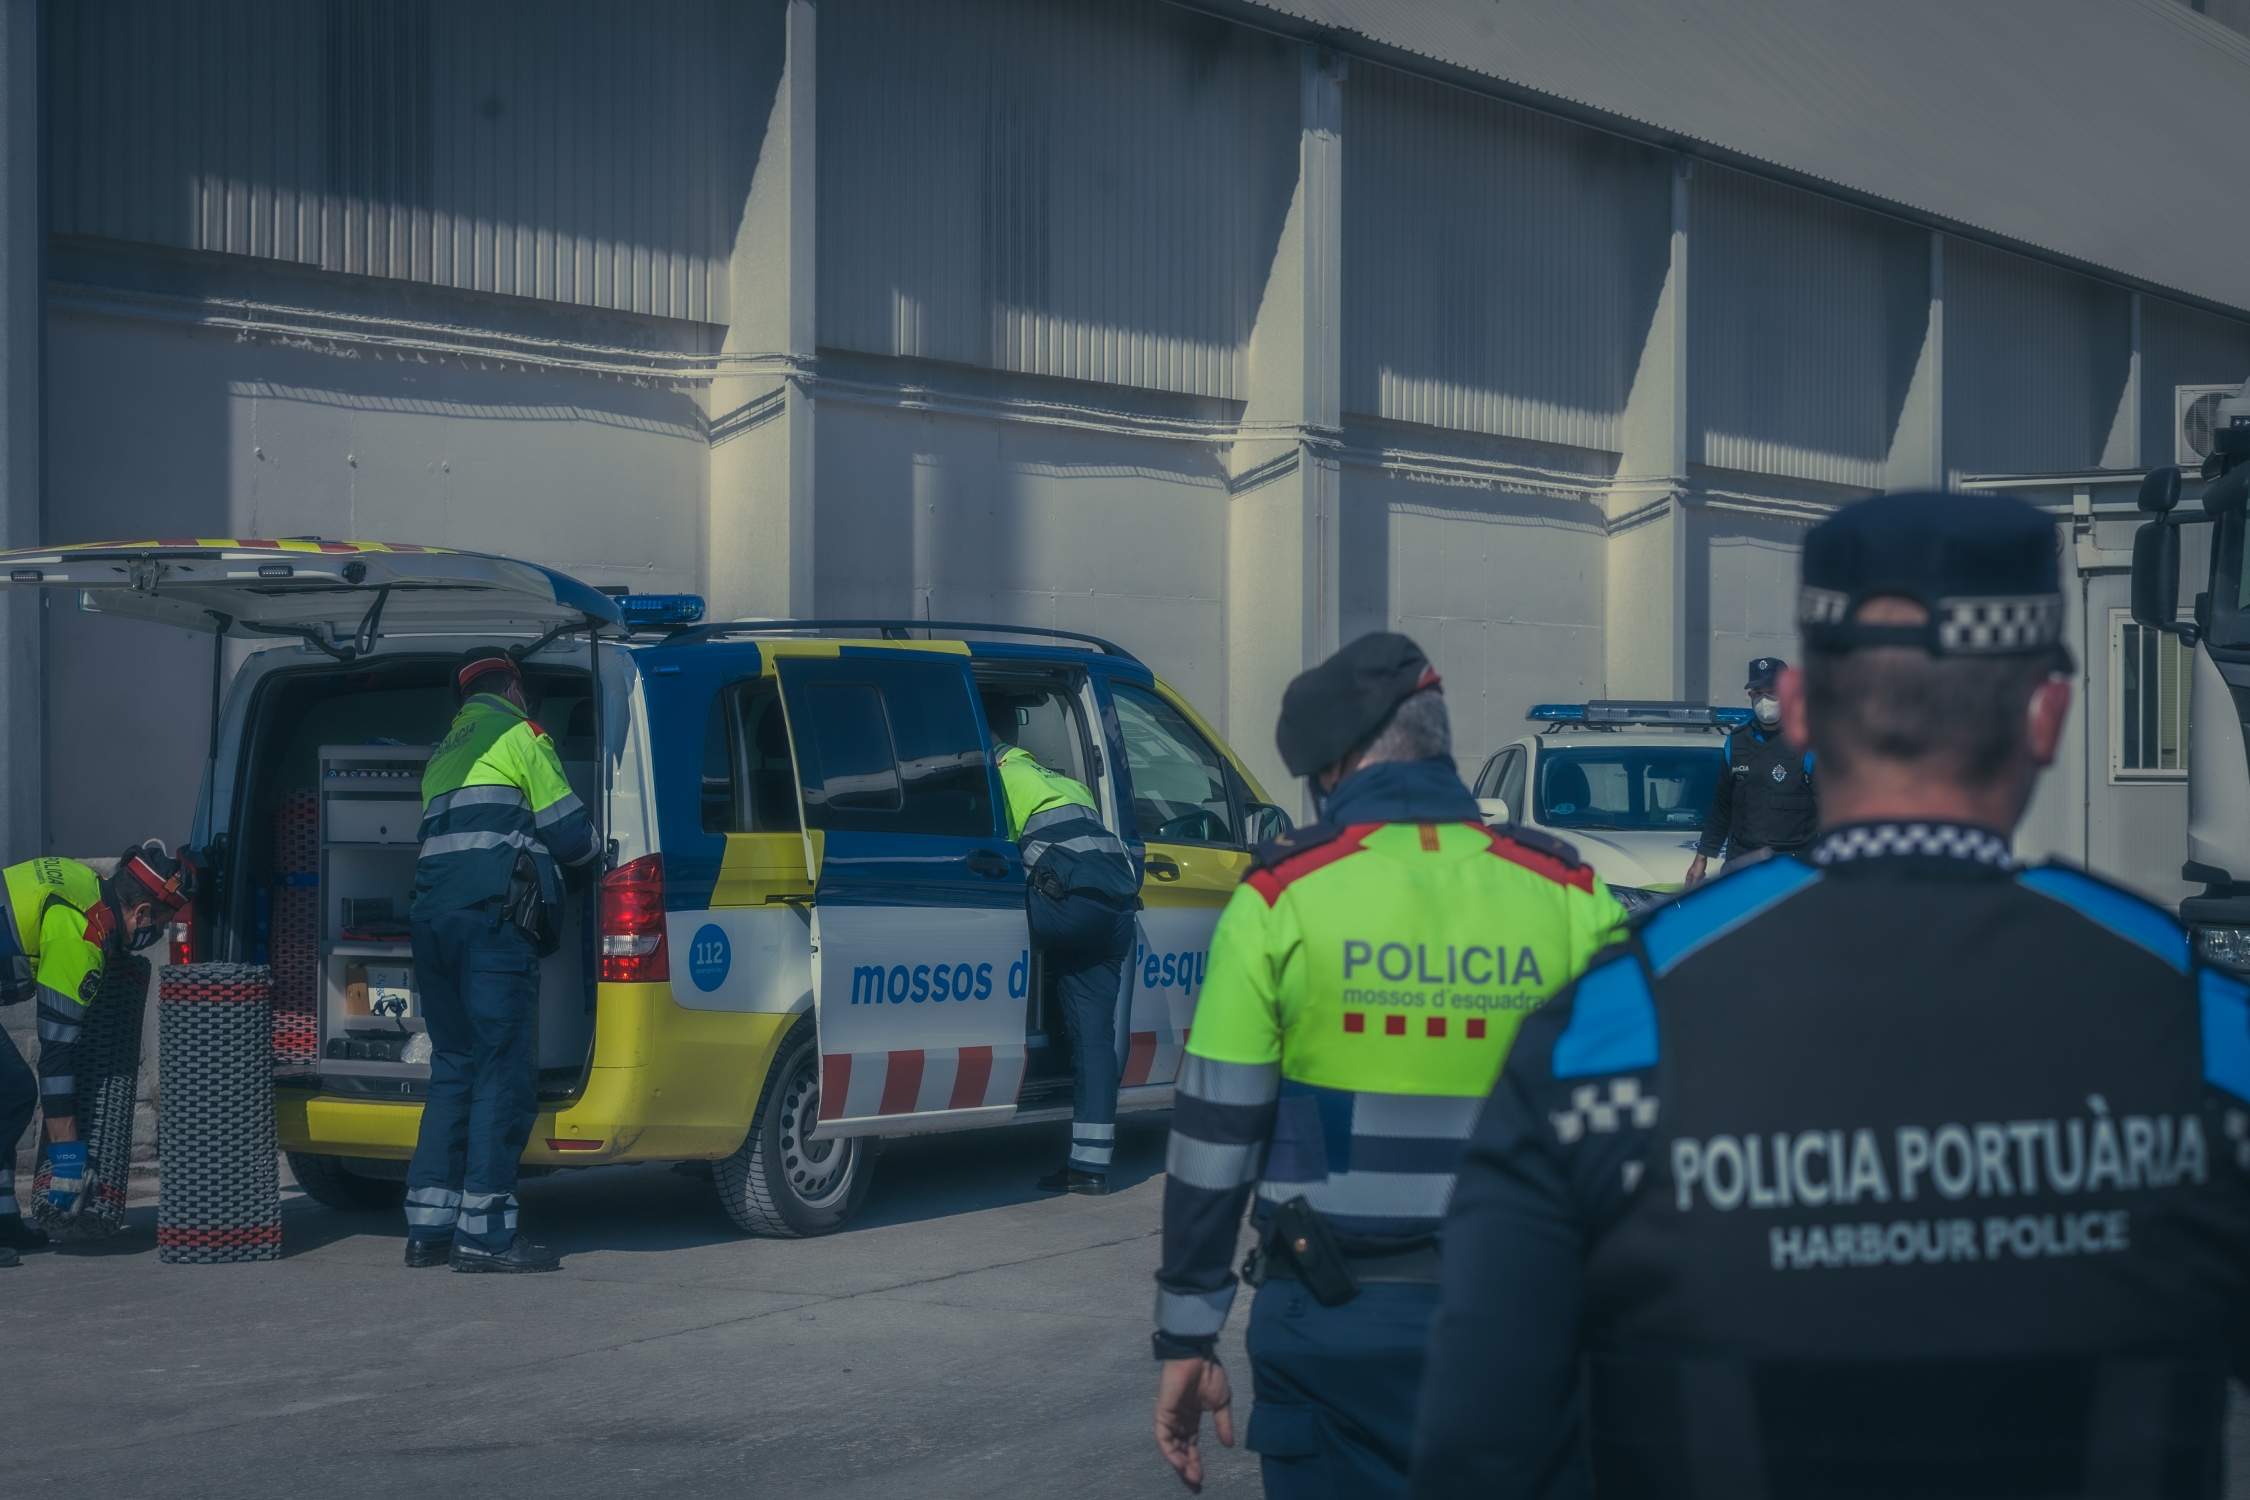 Los Mossos d'Esquadra ganan el Port de Tarragona y ponen un pie en un espacio controlado por la Guardia Civil